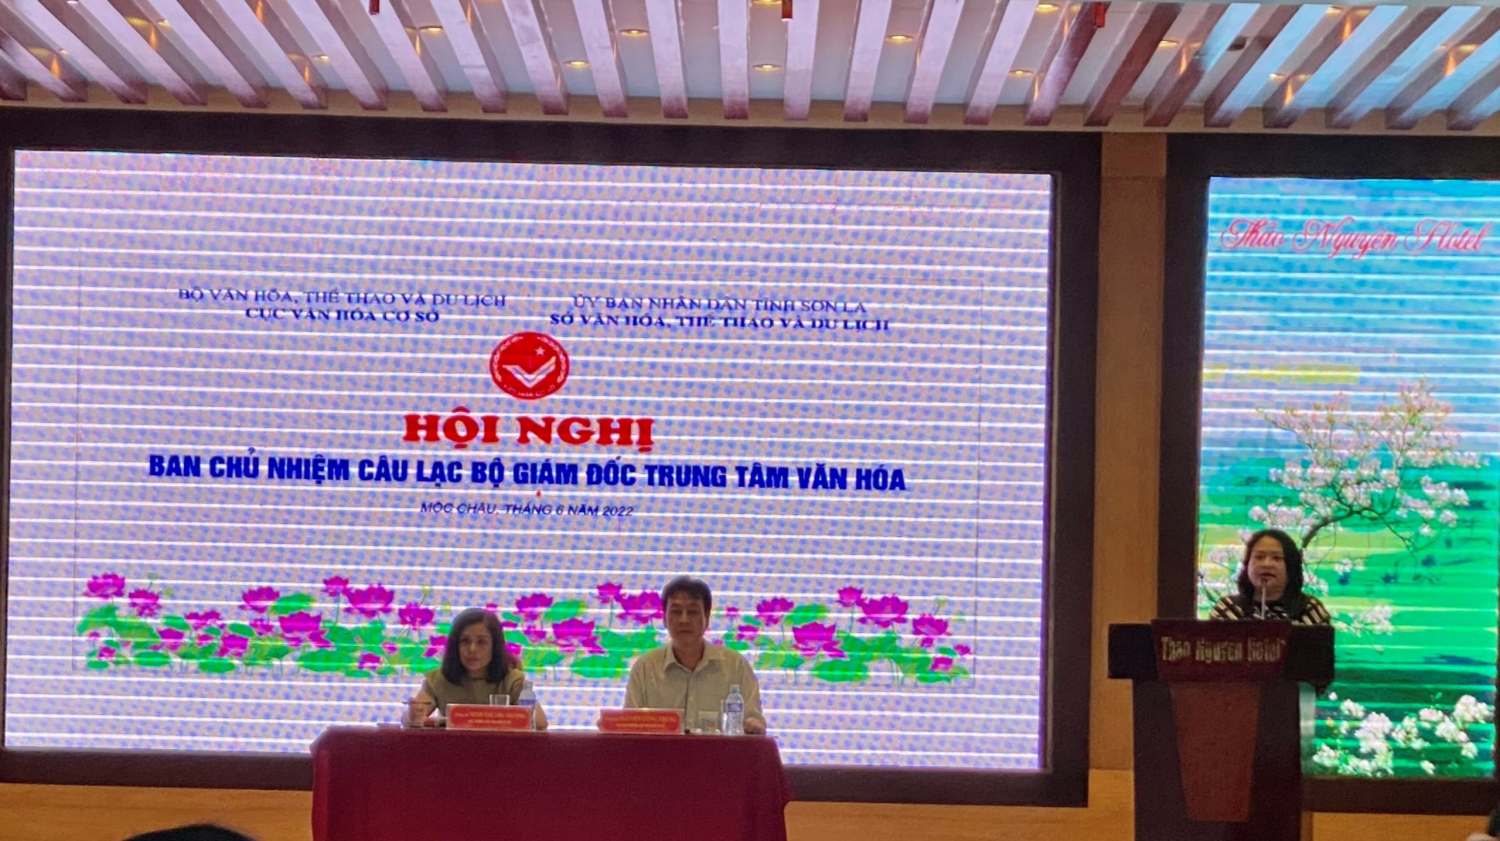 Bà Nguyễn Thị Hương Giám đốc Trung tâm Văn hóa Quảng Nam trình bày tham luận tại Hội nghị